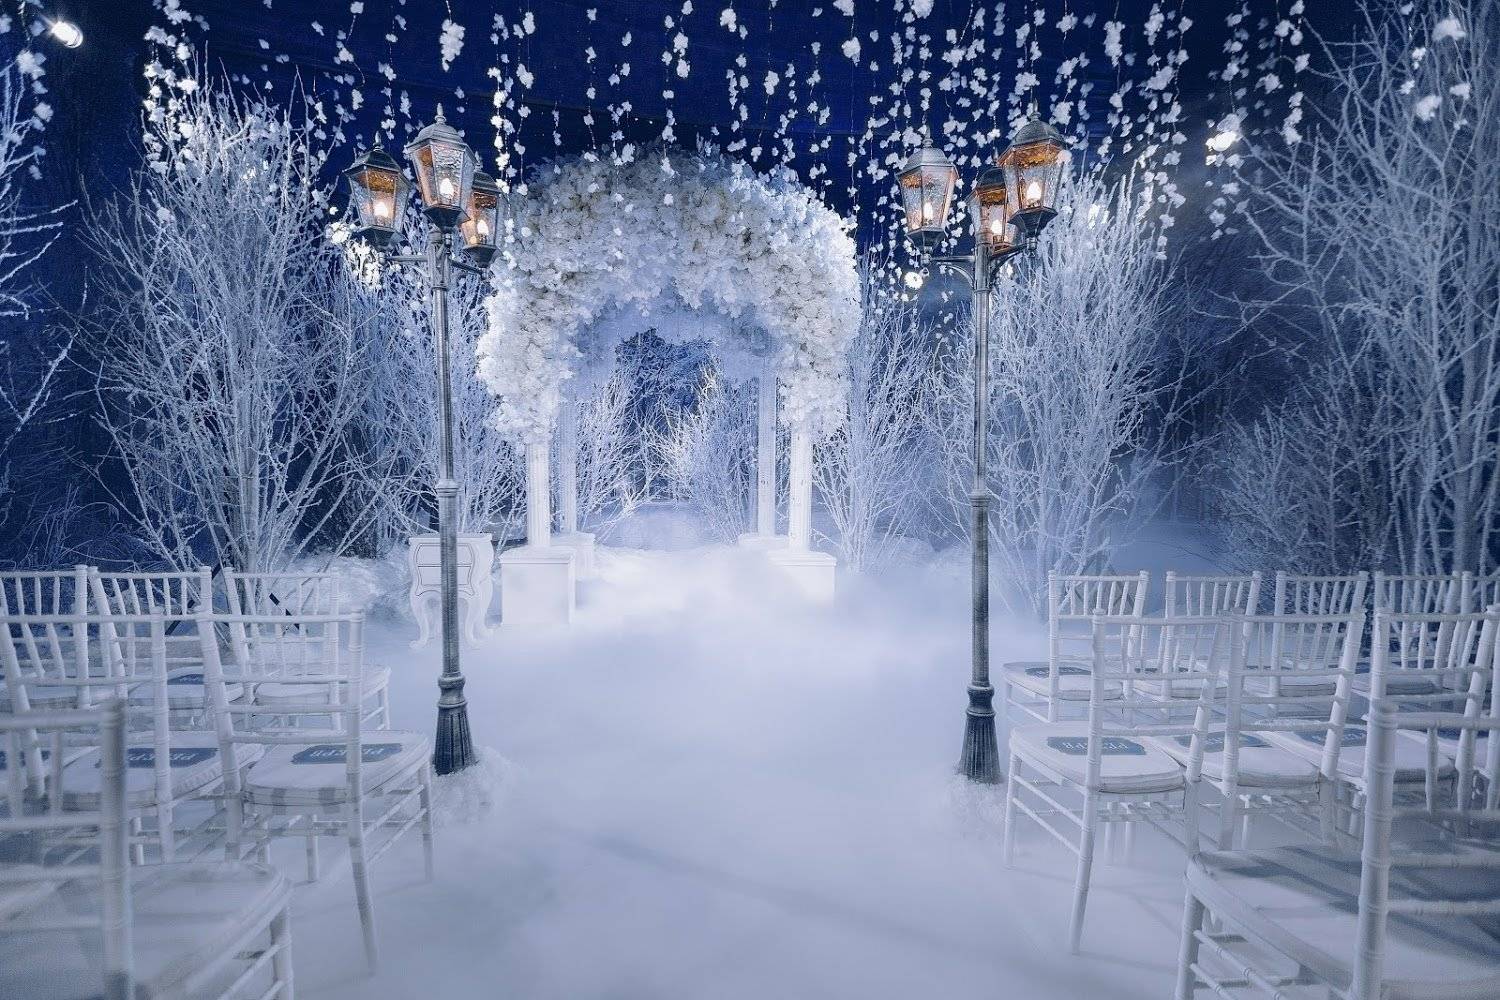 Свадьба зимой: идеи для проведения и оформления торжества, плюсы и минусы зимней свадьбы